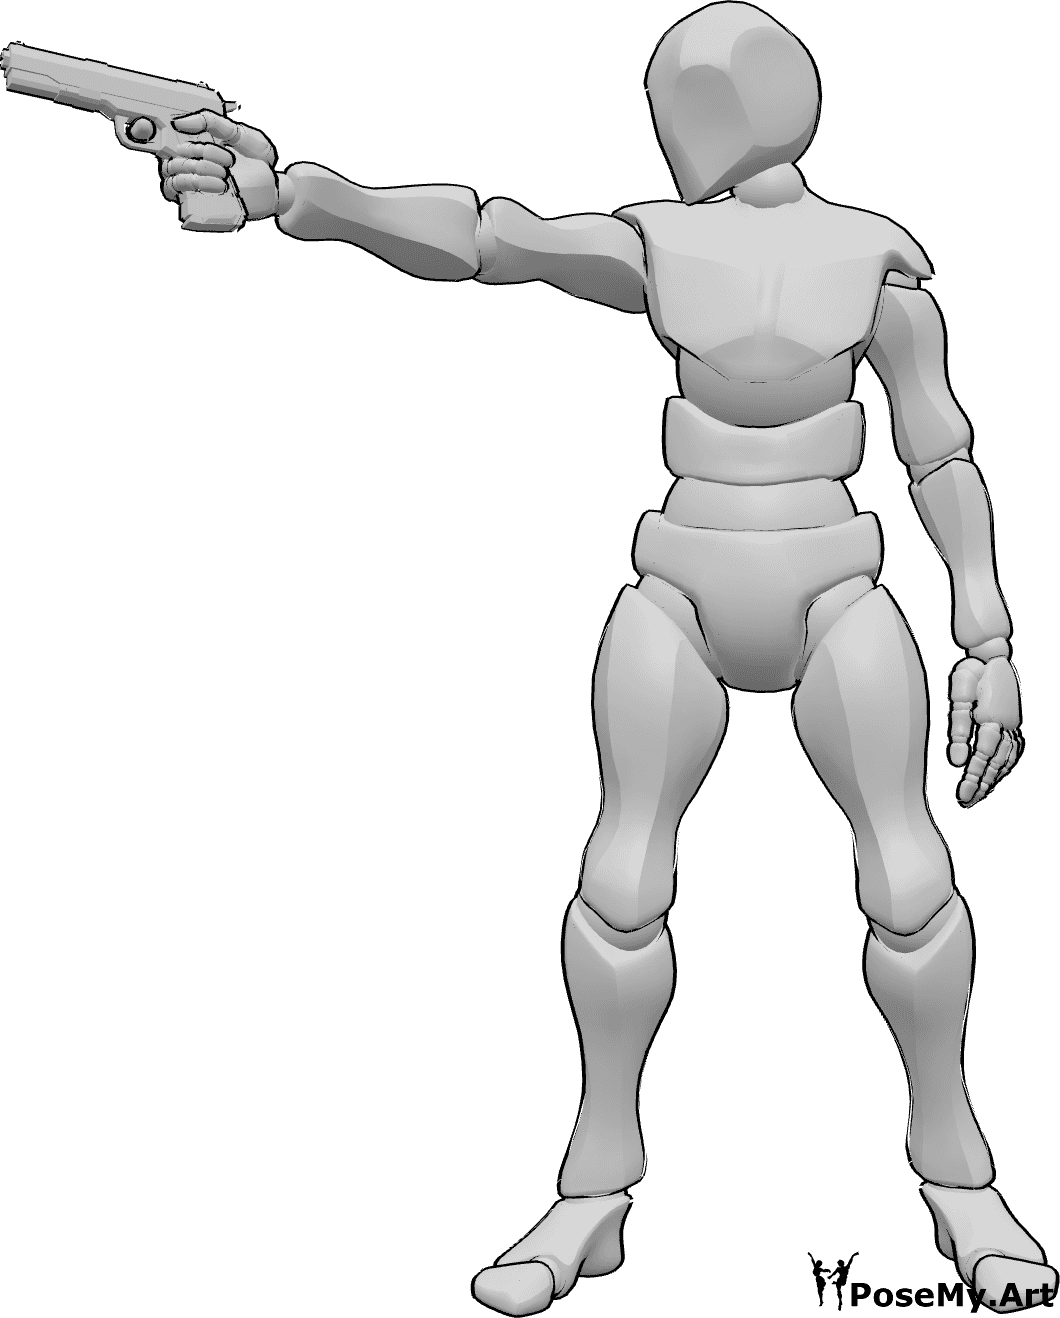 Référence des poses- Homme visant la pose d'un pistolet - L'homme est debout, il tient un pistolet dans sa main droite et vise la droite.